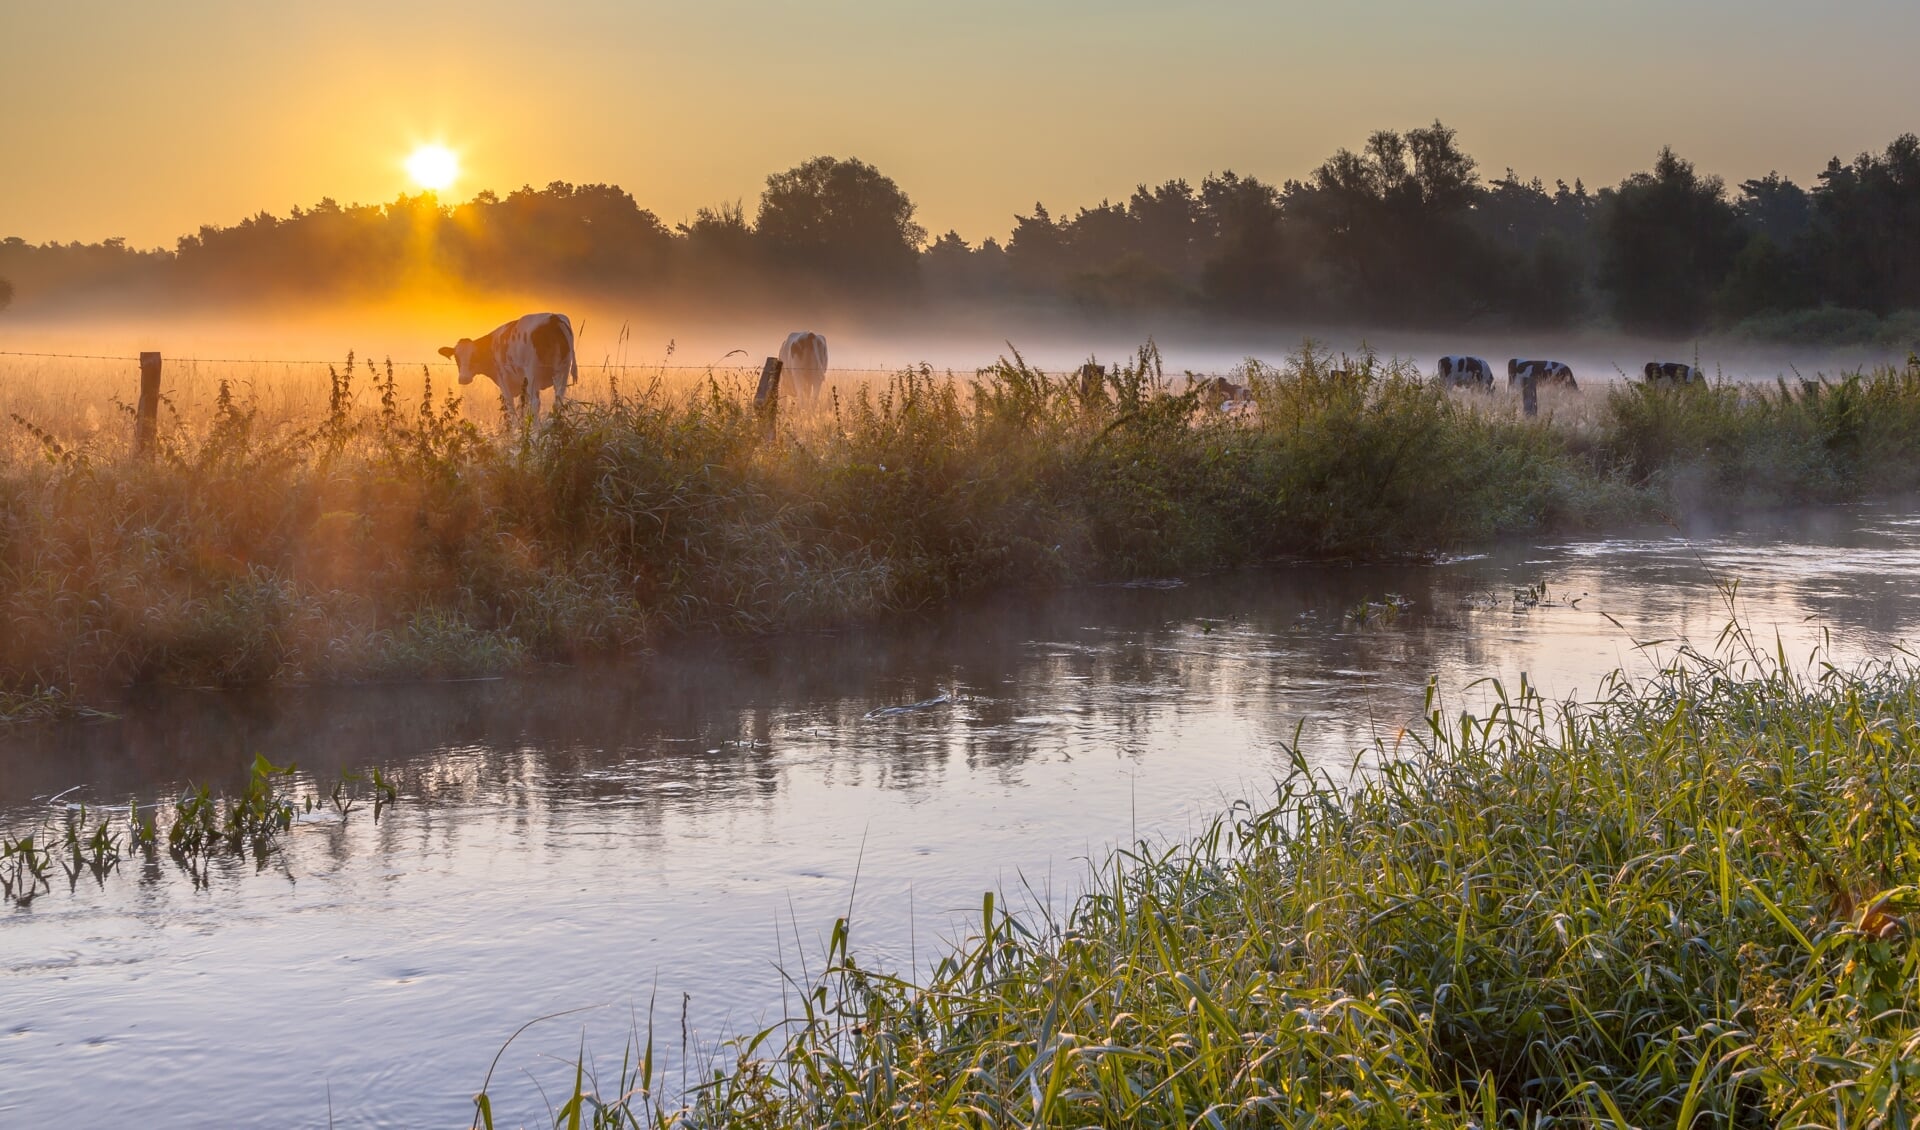 De rivier De Dinkel; één van de belangrijke watergangen in de regio. Het vinden van een goede balans tussen te veel en te weinig water is belangrijk om de natuur én landbouw te behouden.